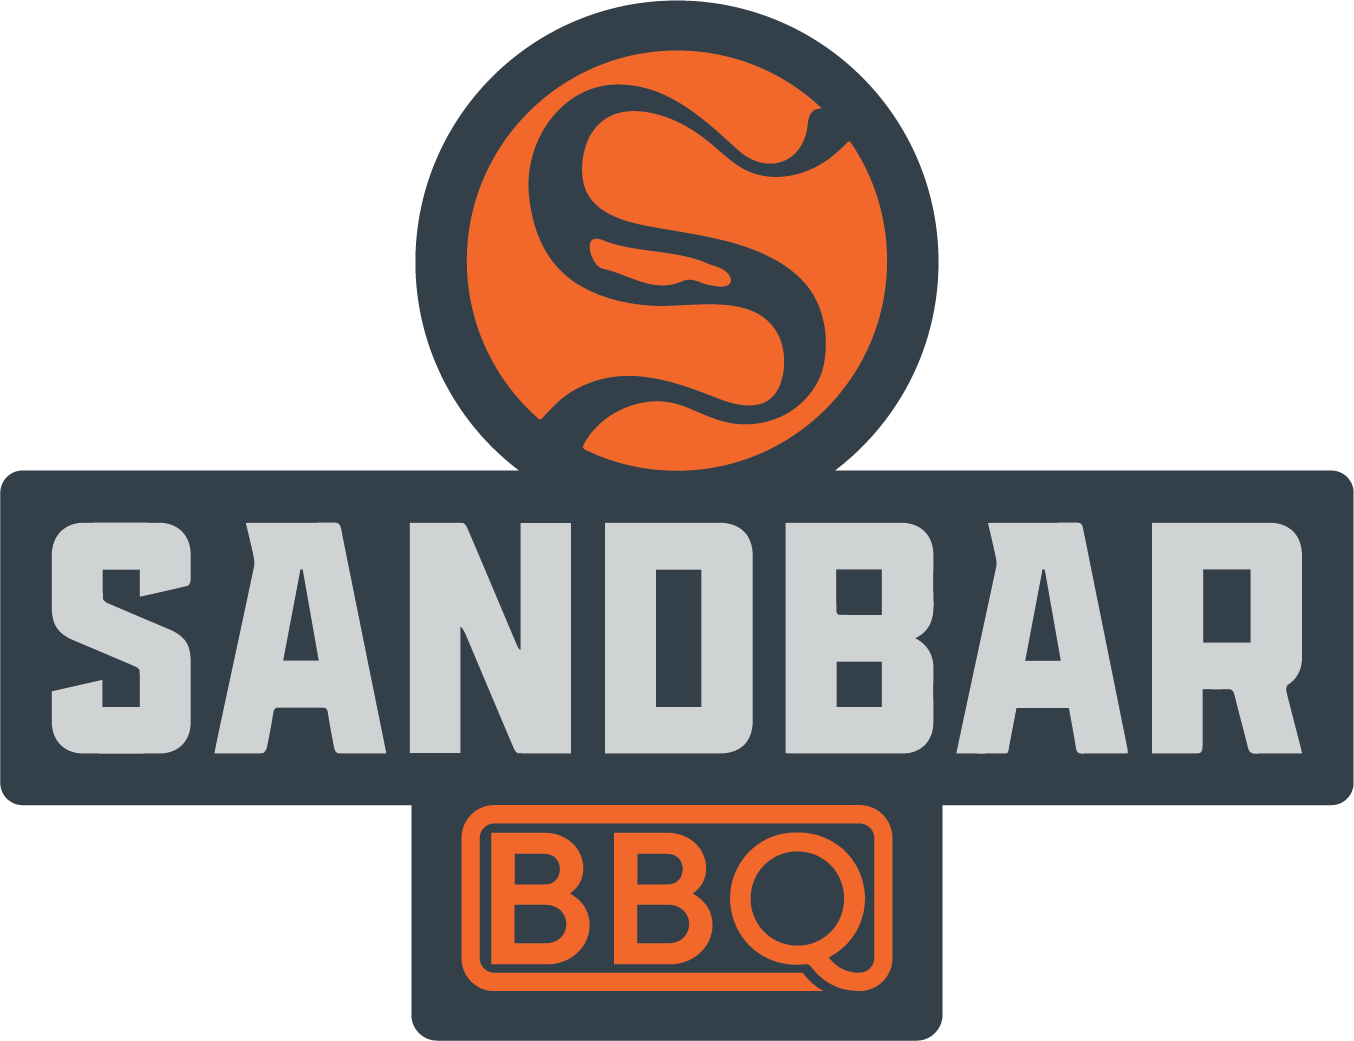 Sandbar BBQ / Sandy, Oregon